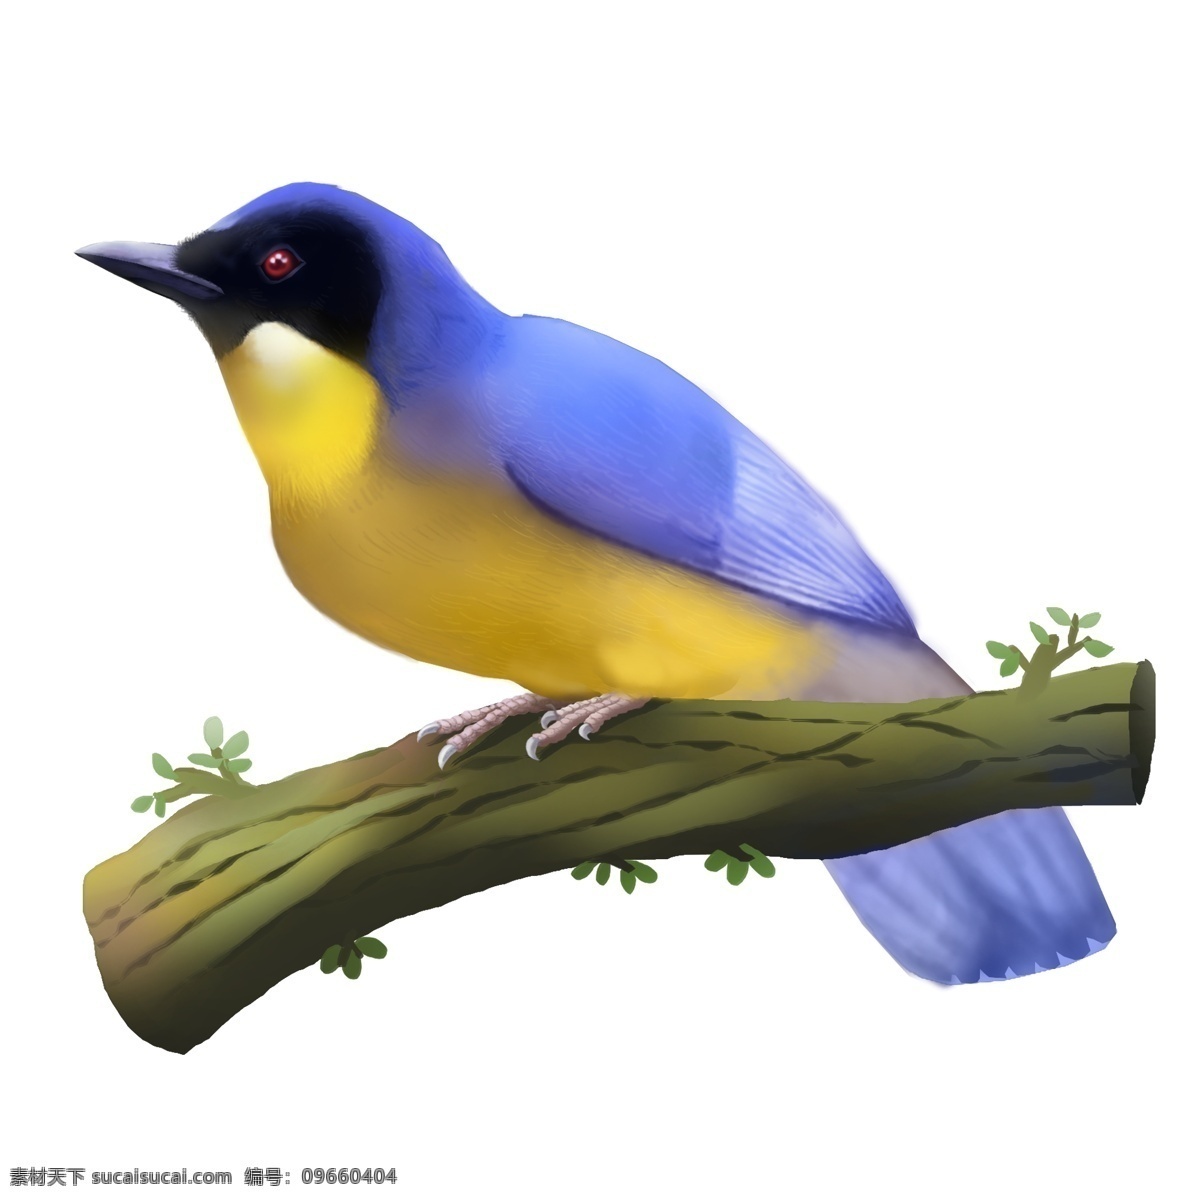 商用 高清 手绘 珍稀 动物 棕 腹 蓝 仙 鹟 雄 鸟 珍稀动物 可商用 保护动画 鸟类